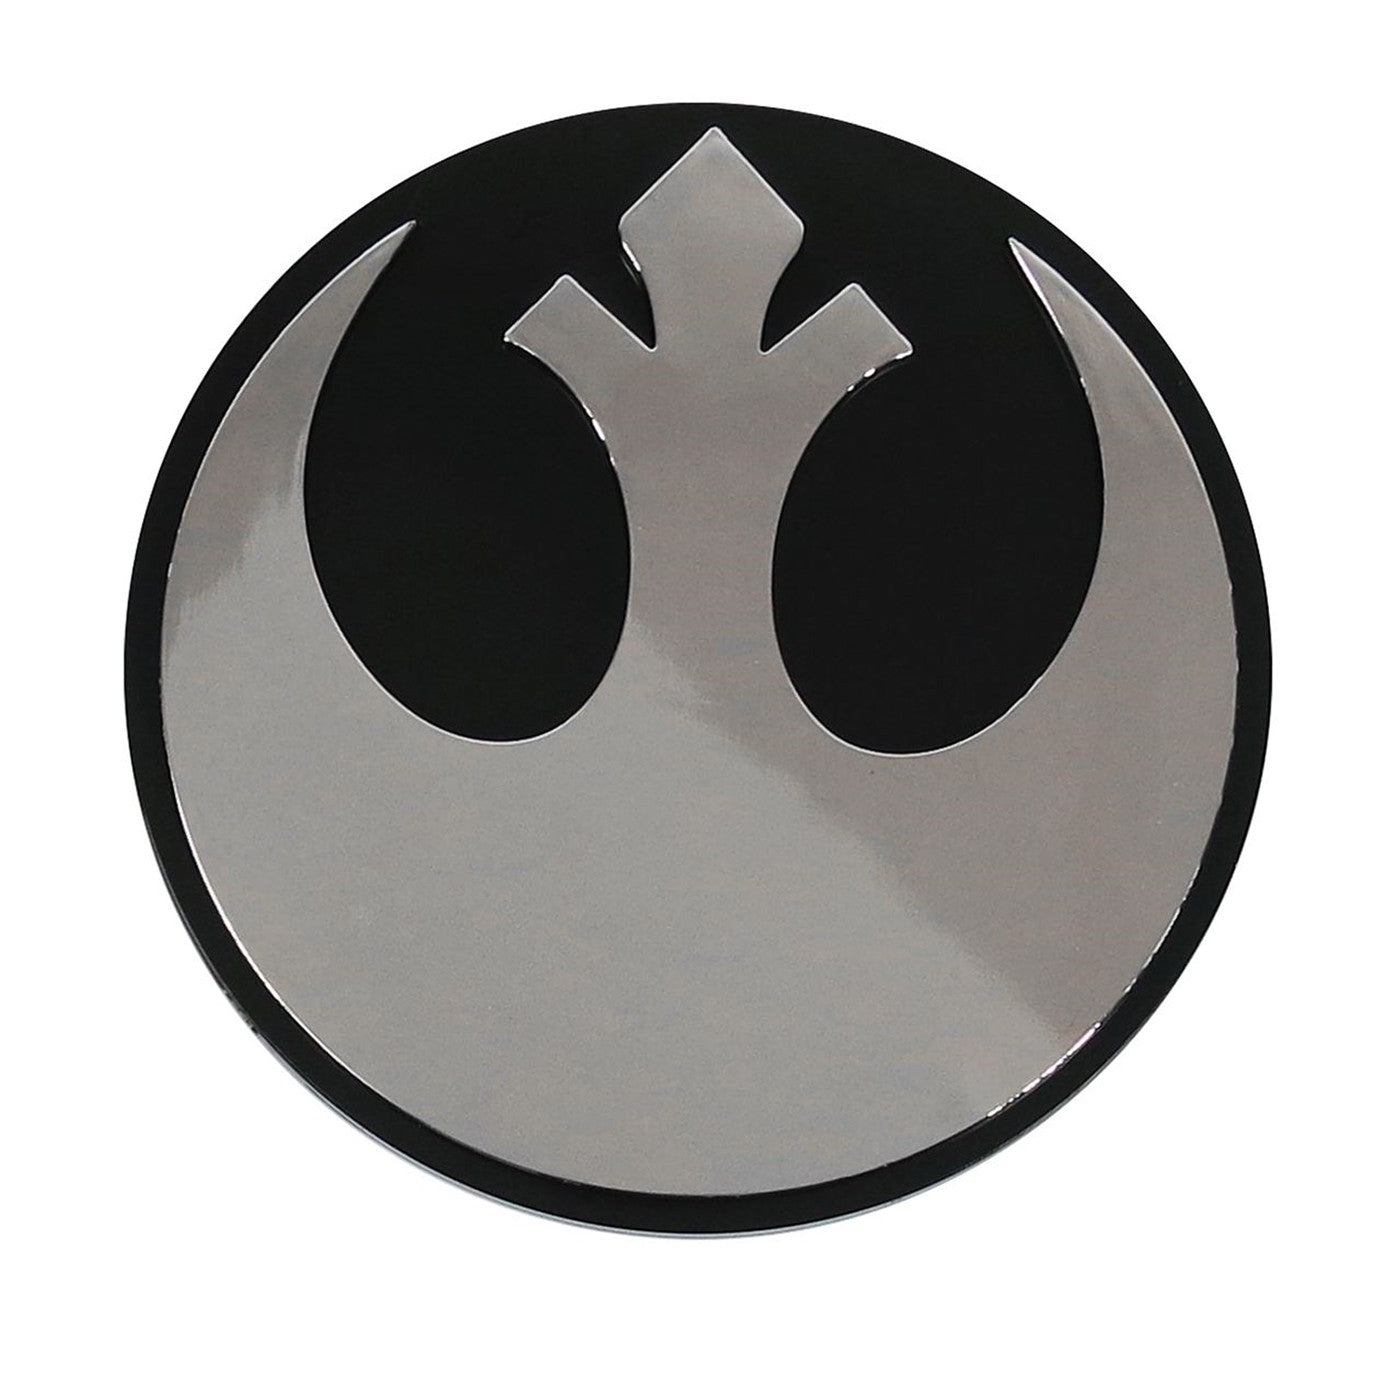 Star Wars Rebel Chrome Car Emblem